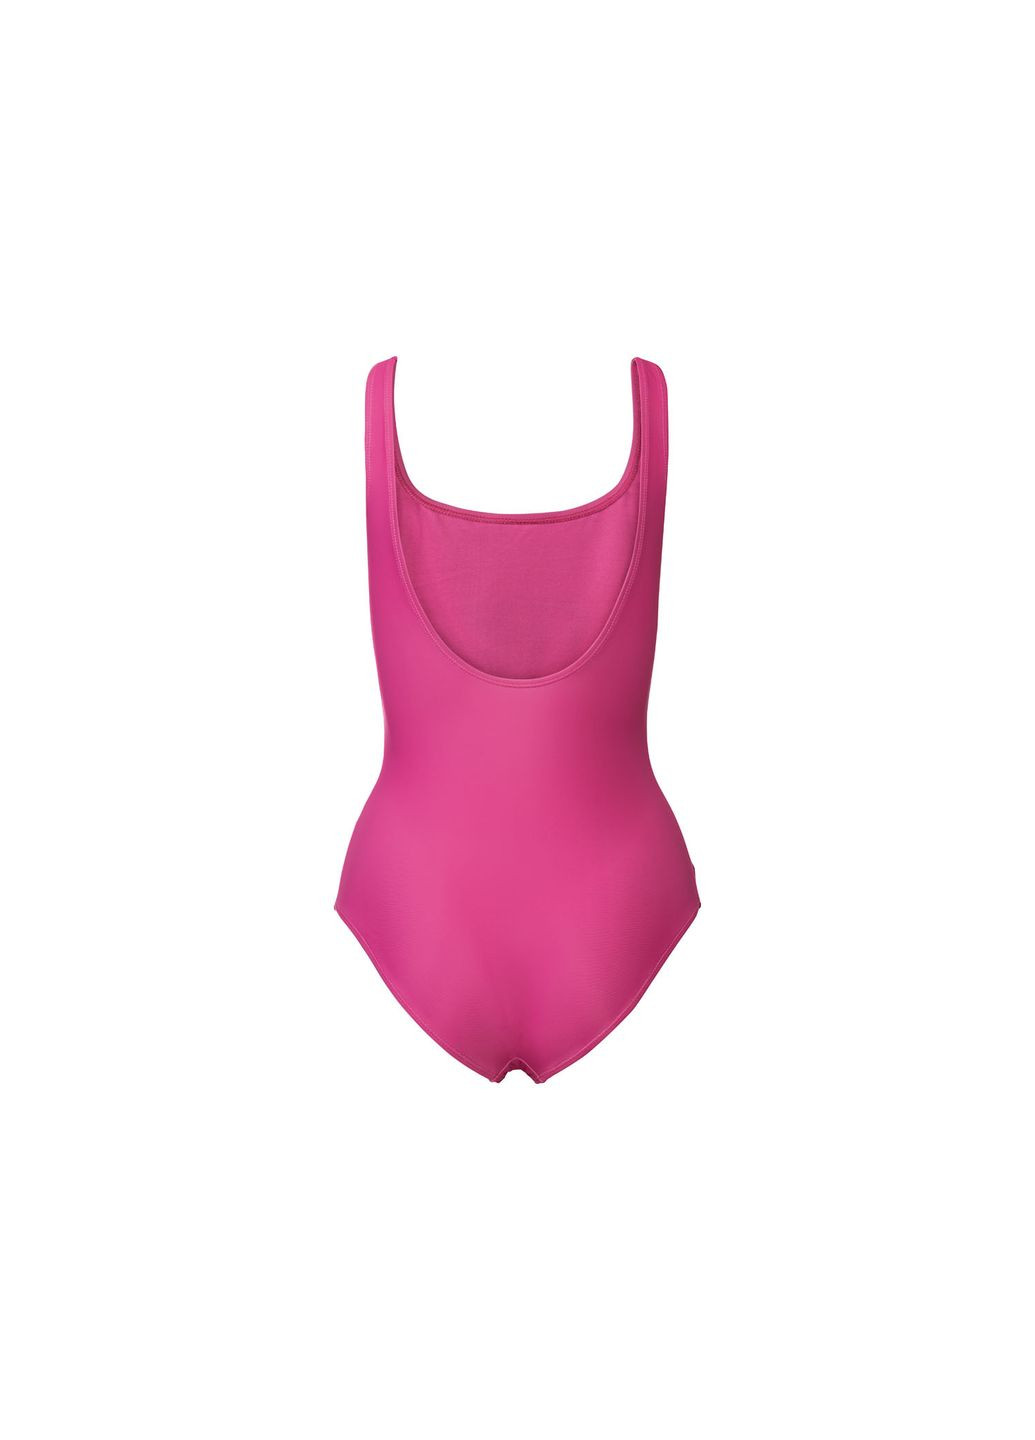 Розовый купальник слитный на подкладке для женщины creora® 372115 42(m) бикини Esmara С открытой спиной, С открытыми плечами